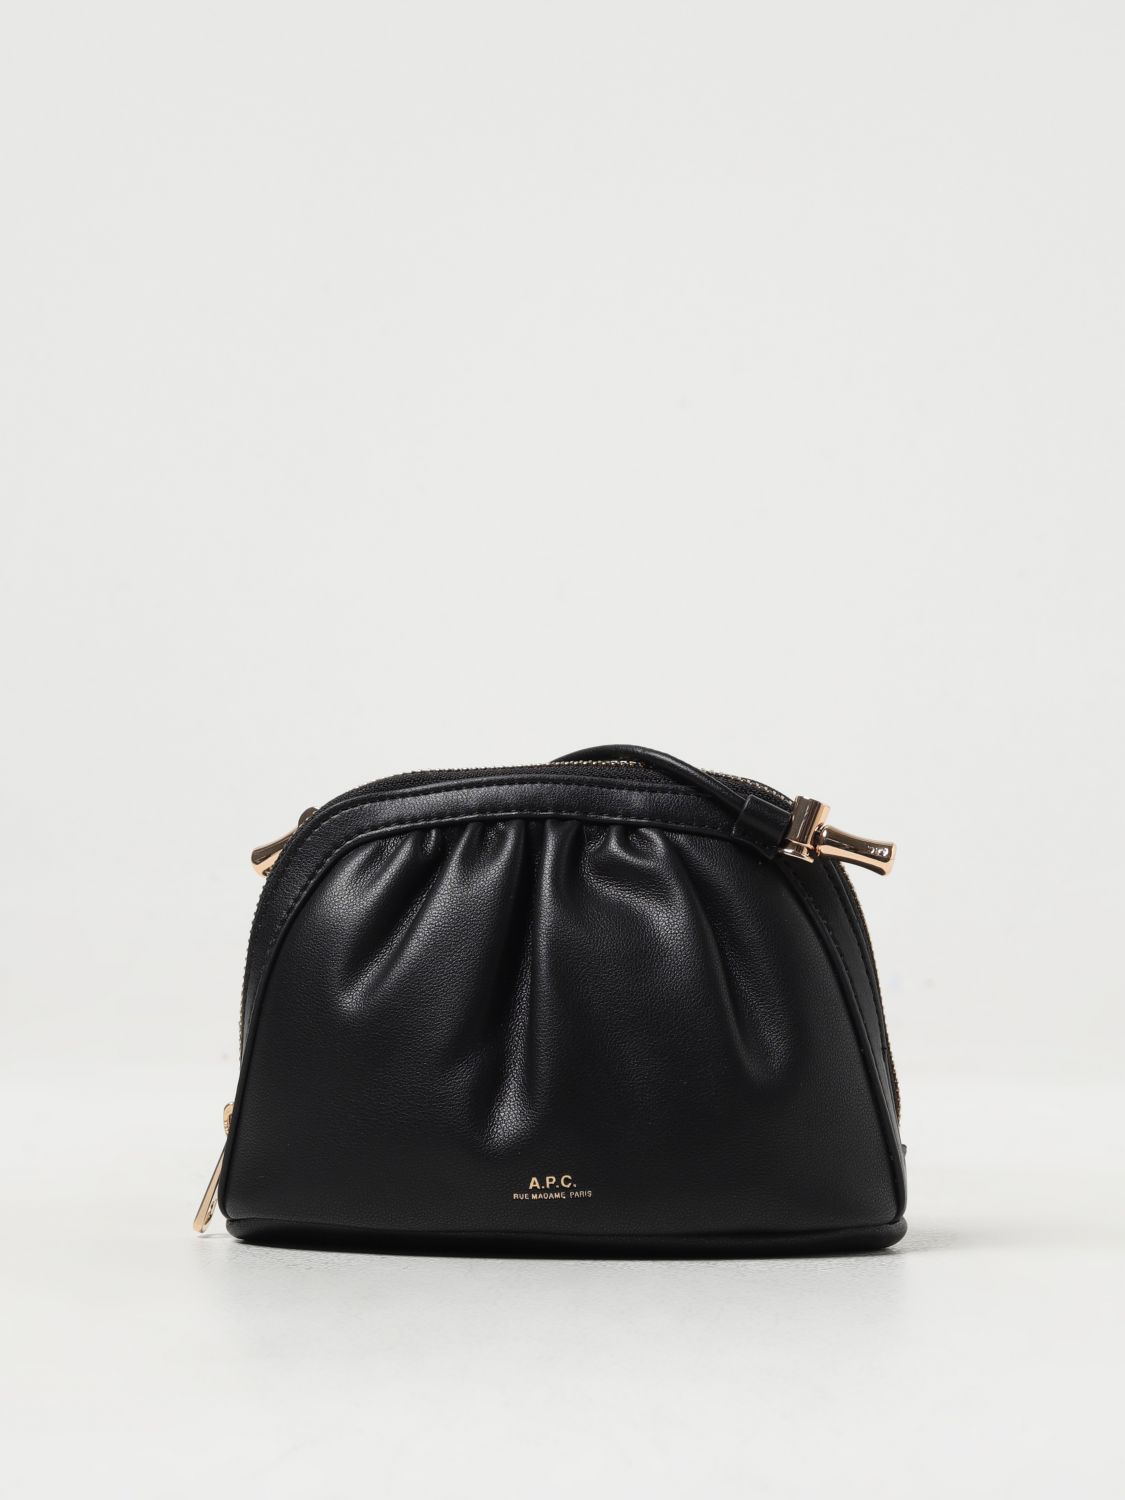 Apc Mini Bag A.p.c. Woman Color Black